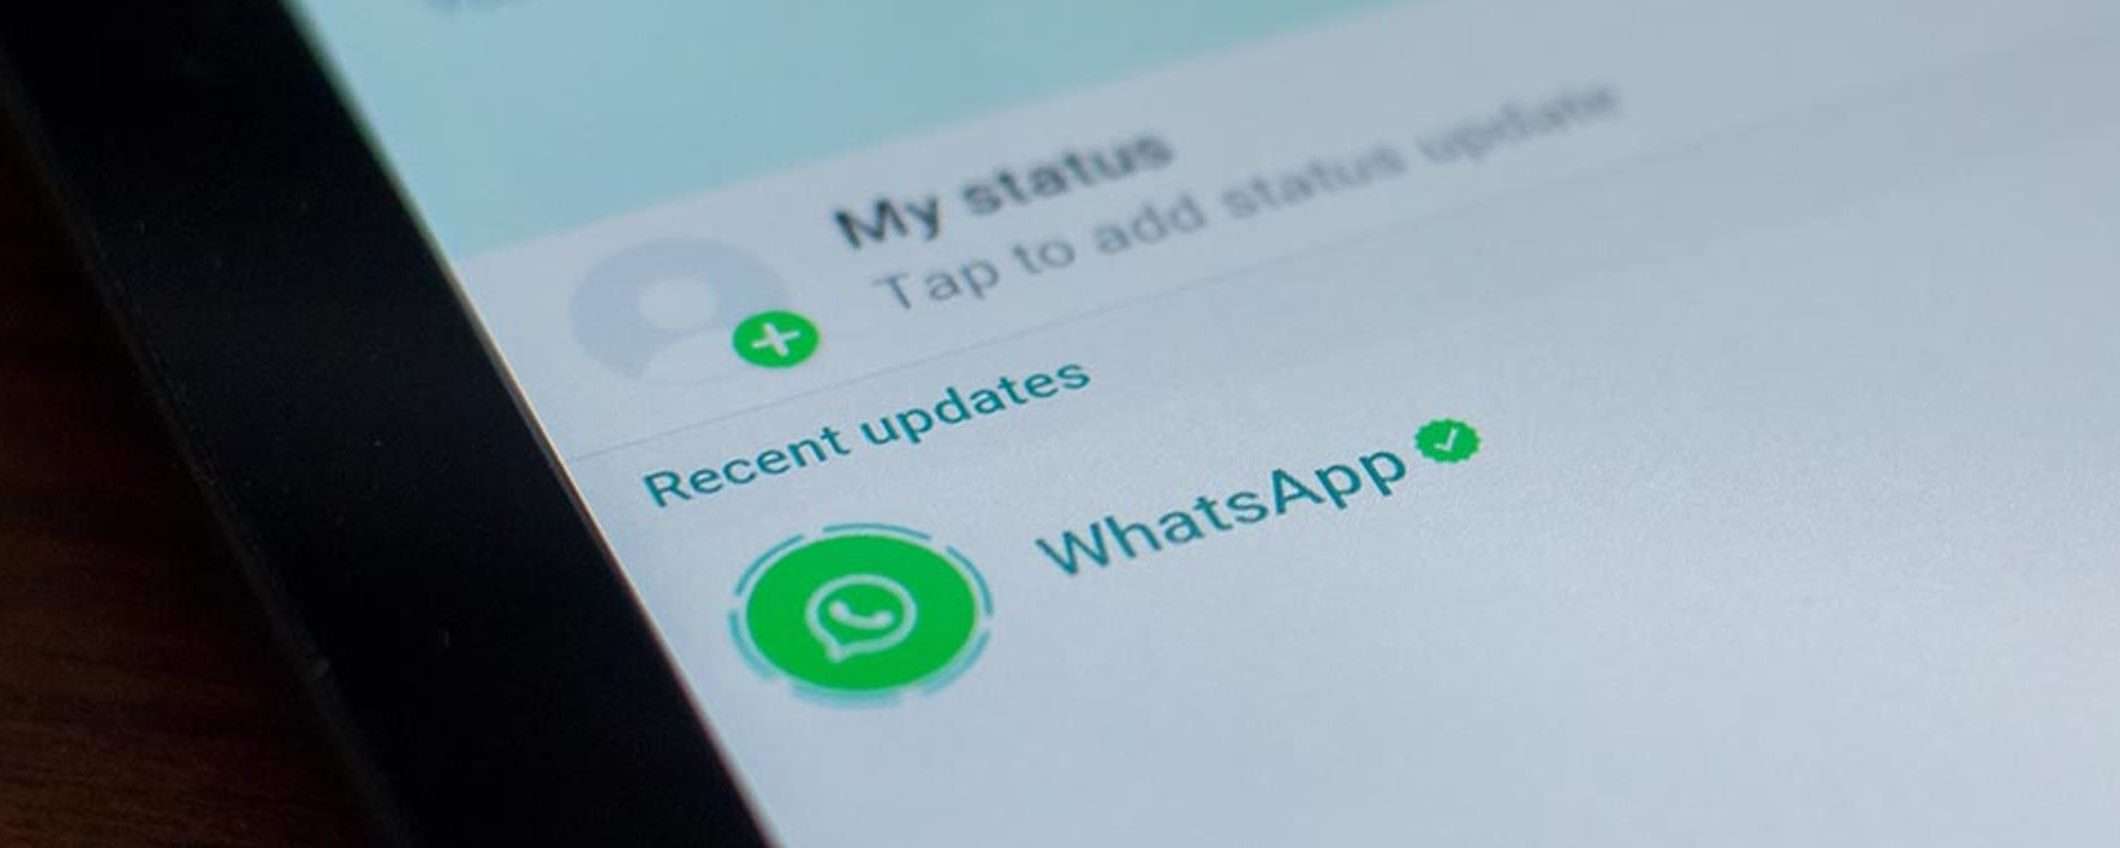 WhatsApp: gli aggiornamenti di stato VOCALI arrivano anche su iOS